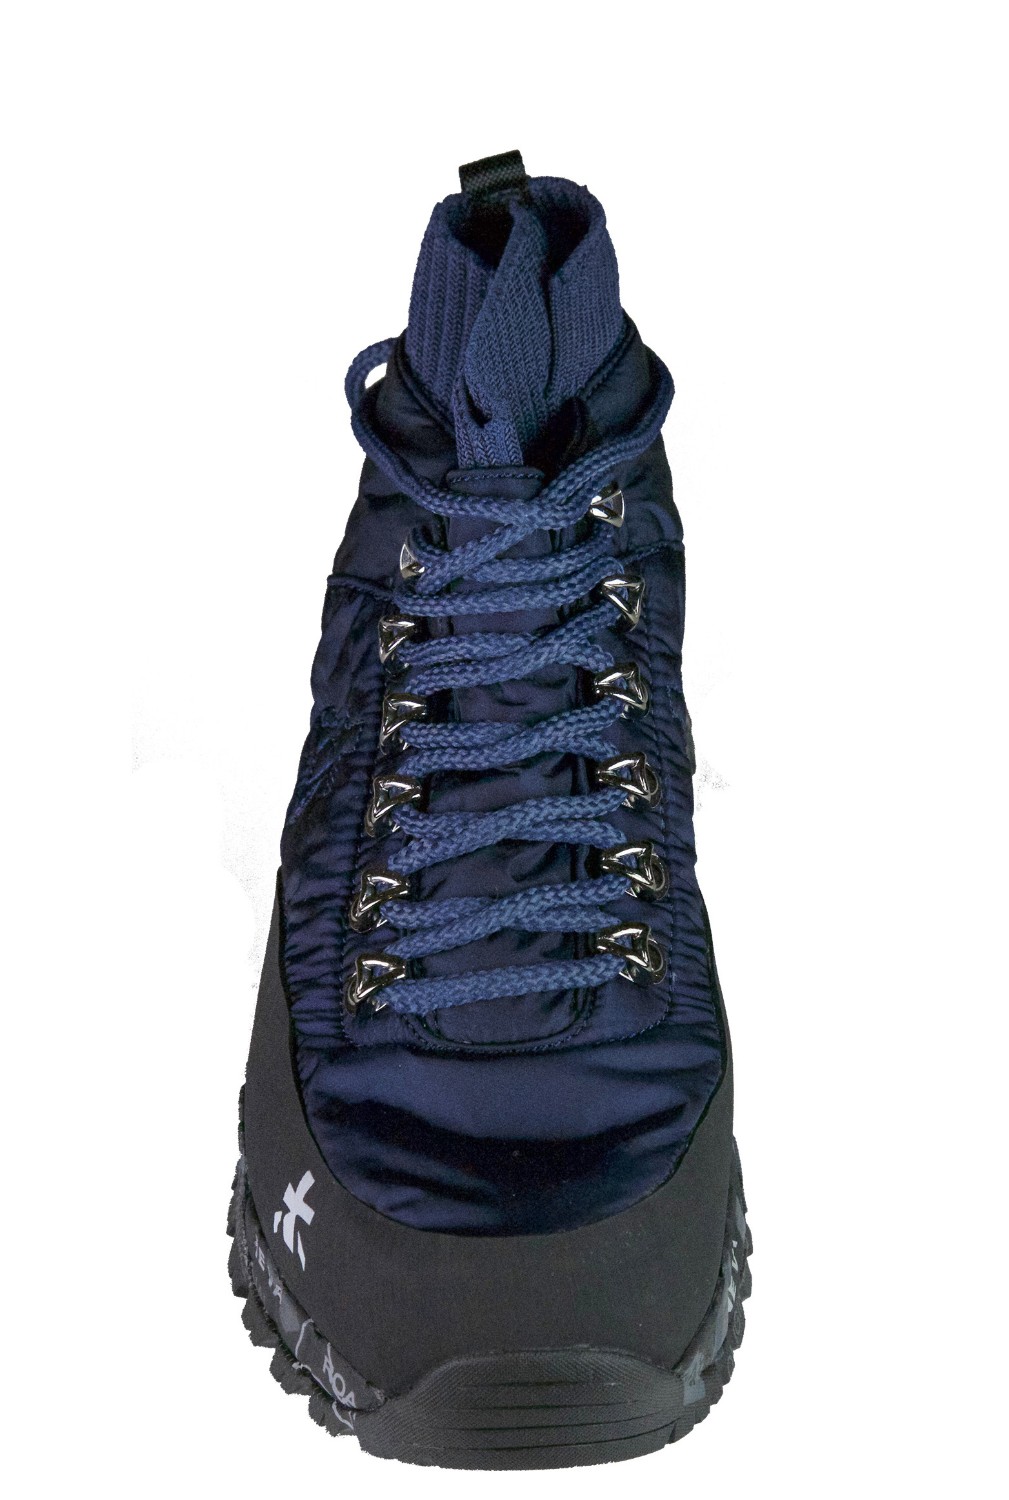 shop Premiata White Sales Scarpe: Sneakers Premiata White Lou Trecd, nuovo modello, tipo trekking, suola Vibram, in colore blu.

Composizione: 70% poliestere, 20% gomma, 10% elastan. number 1065